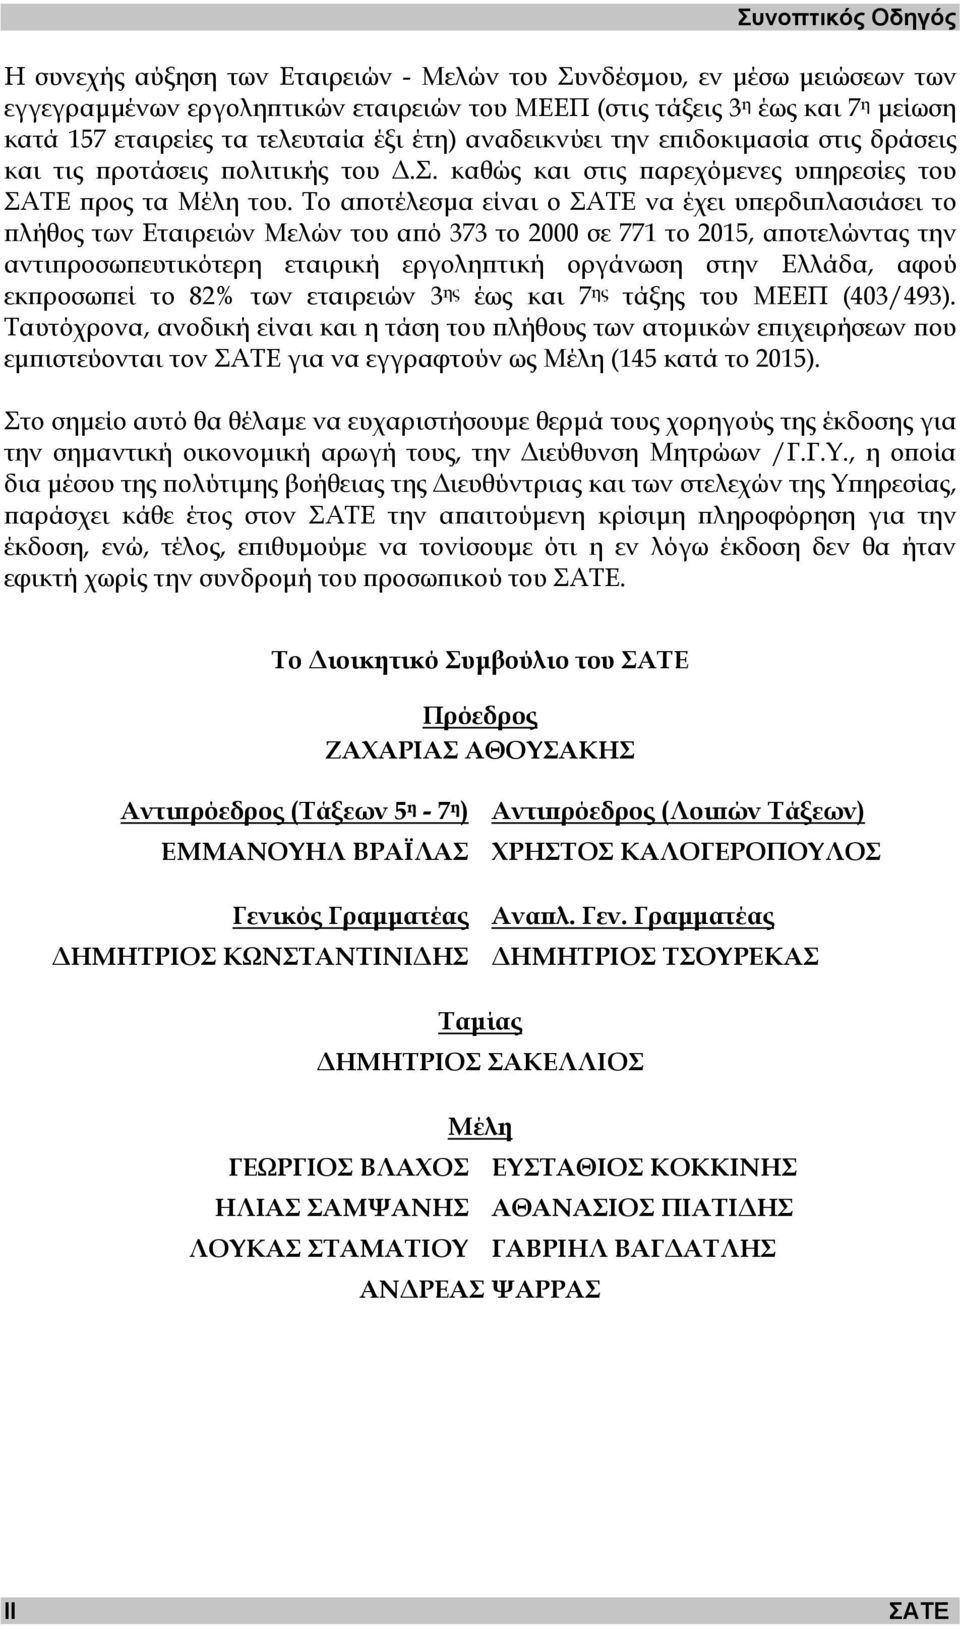 Το αποτέλεσµα είναι ο ΣΑΤΕ να έχει υπερδιπλασιάσει το πλήθος των Εταιρειών Μελών του από 373 το 2000 σε 771 το 2015, αποτελώντας την αντιπροσωπευτικότερη εταιρική εργοληπτική οργάνωση στην Ελλάδα,